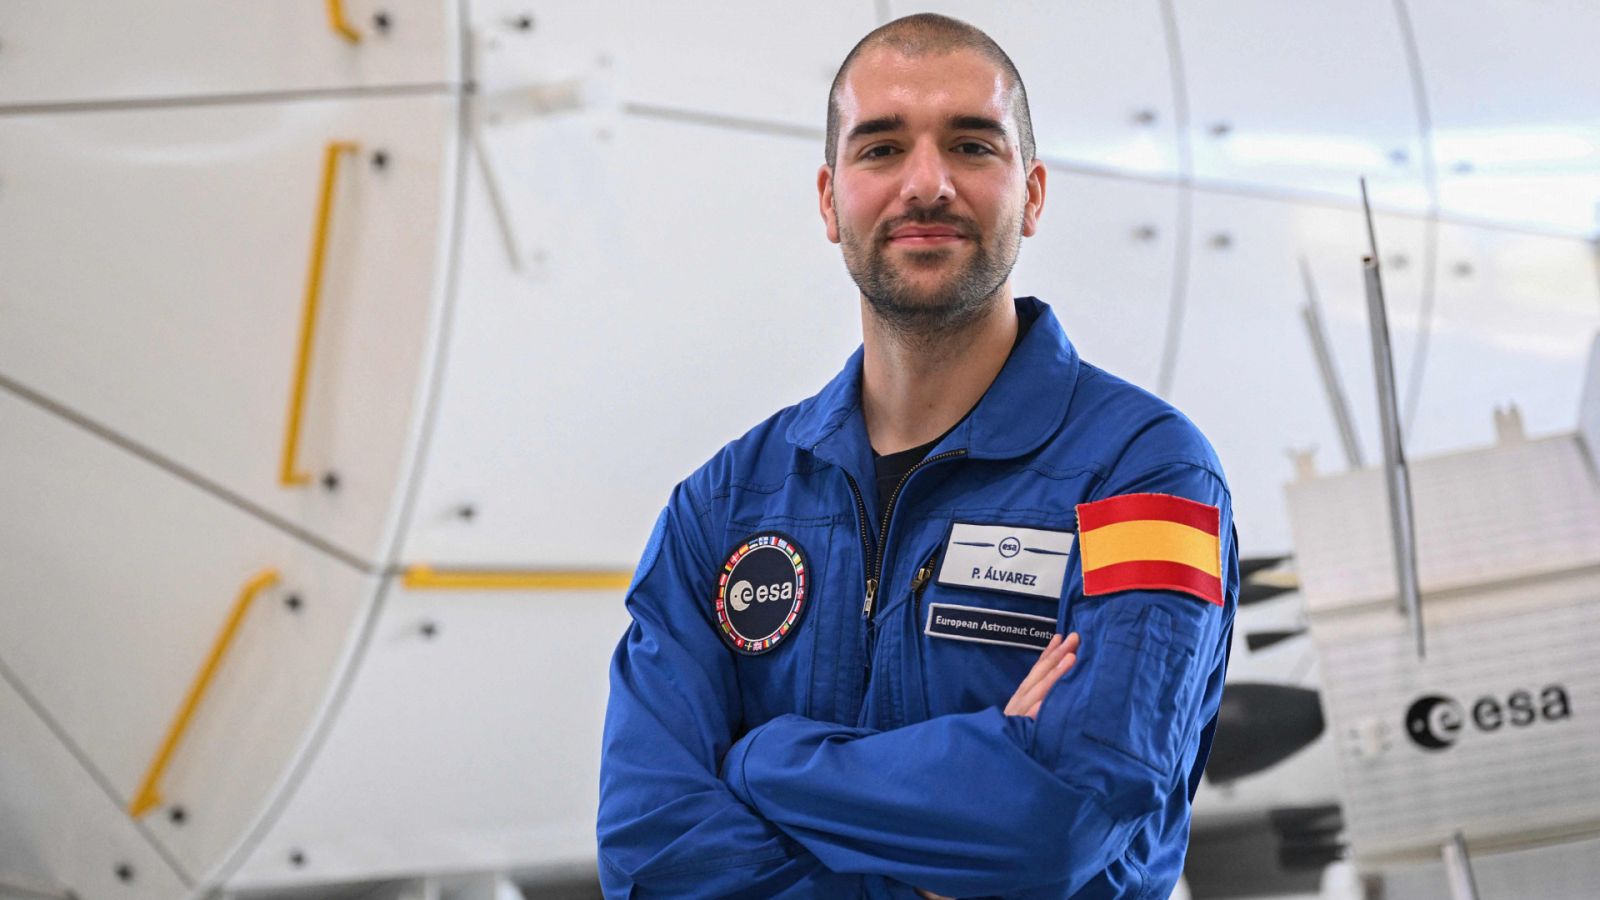 El astronauta español Pablo Álvarez comienza su entrenamiento antes de viajar al espacio